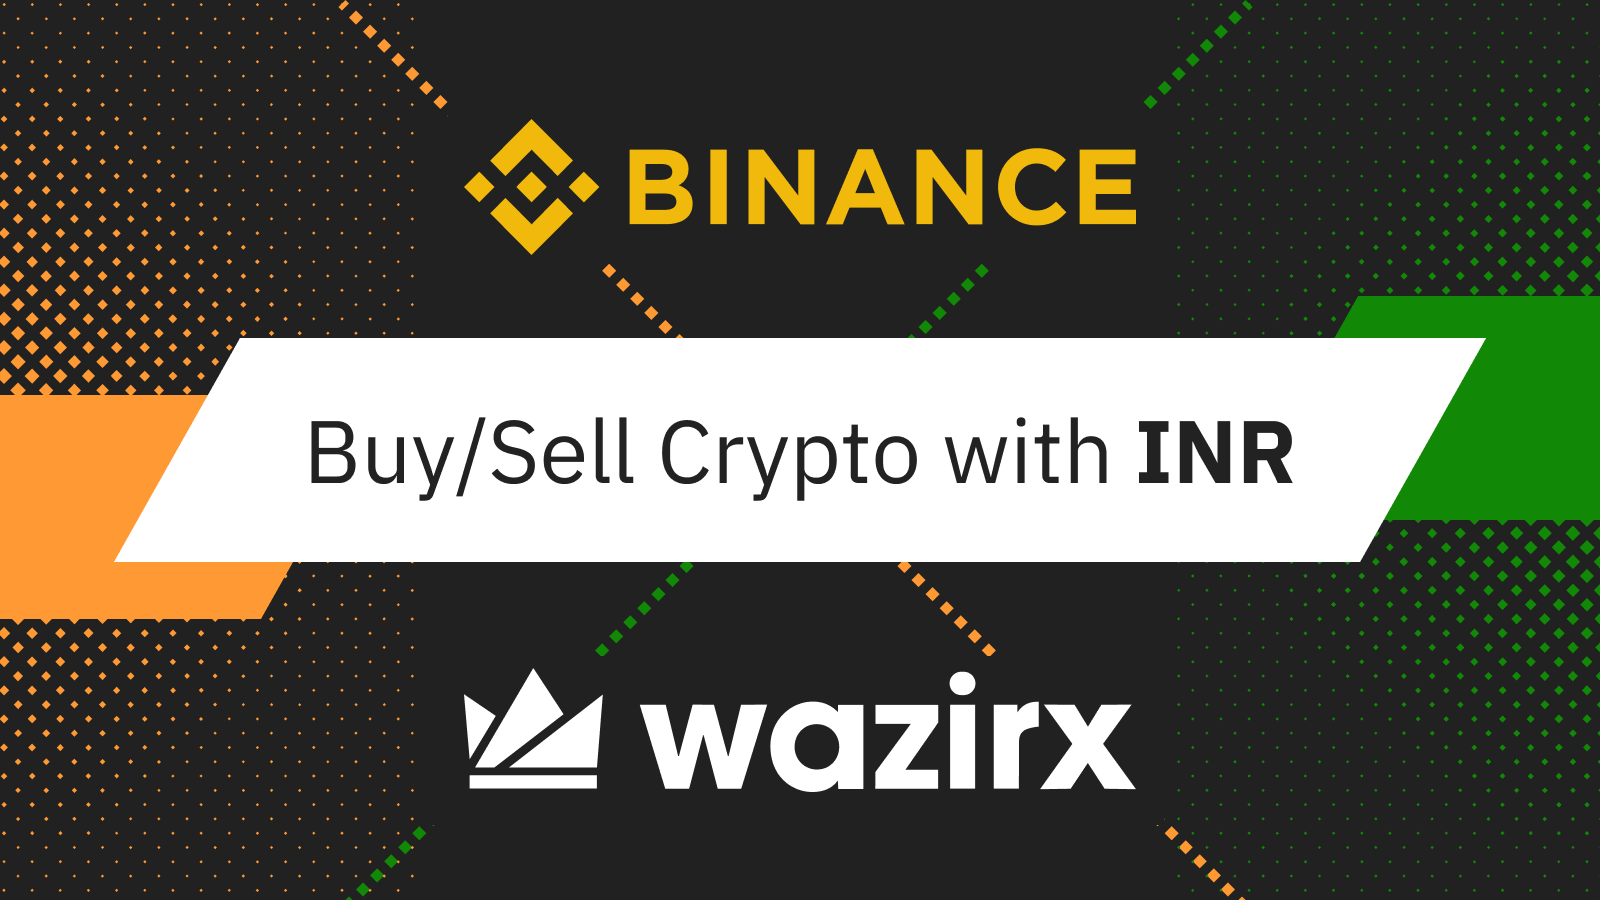 Binance mua lại WazirX - Nền tảng giao dịch kỹ thuật số hàng đầu của Ấn Độ